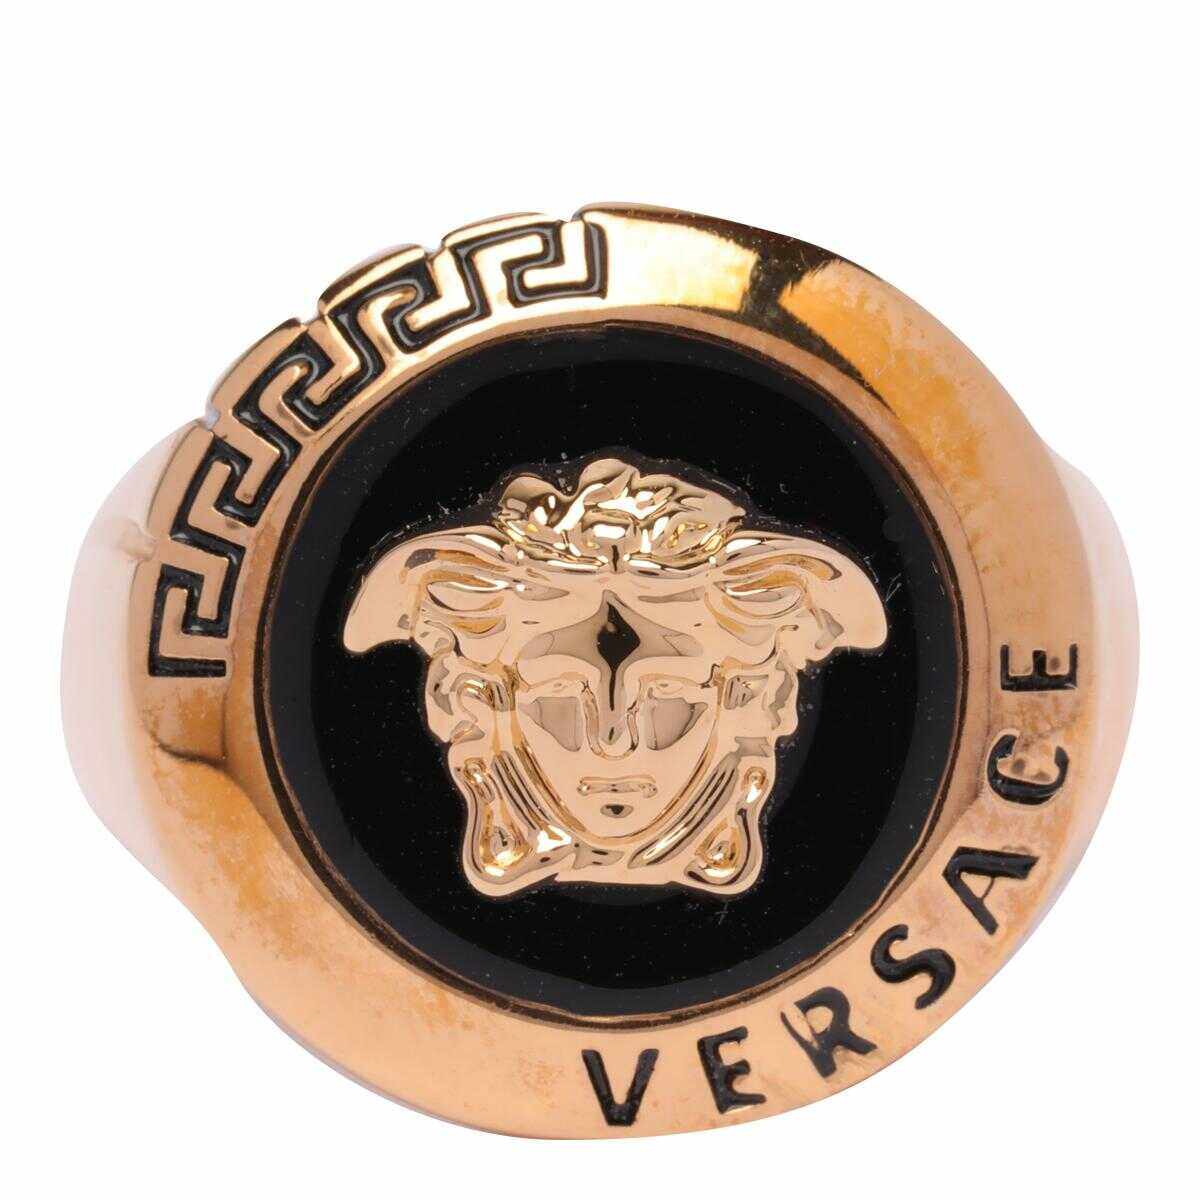 Versace Versace Bijoux Golden